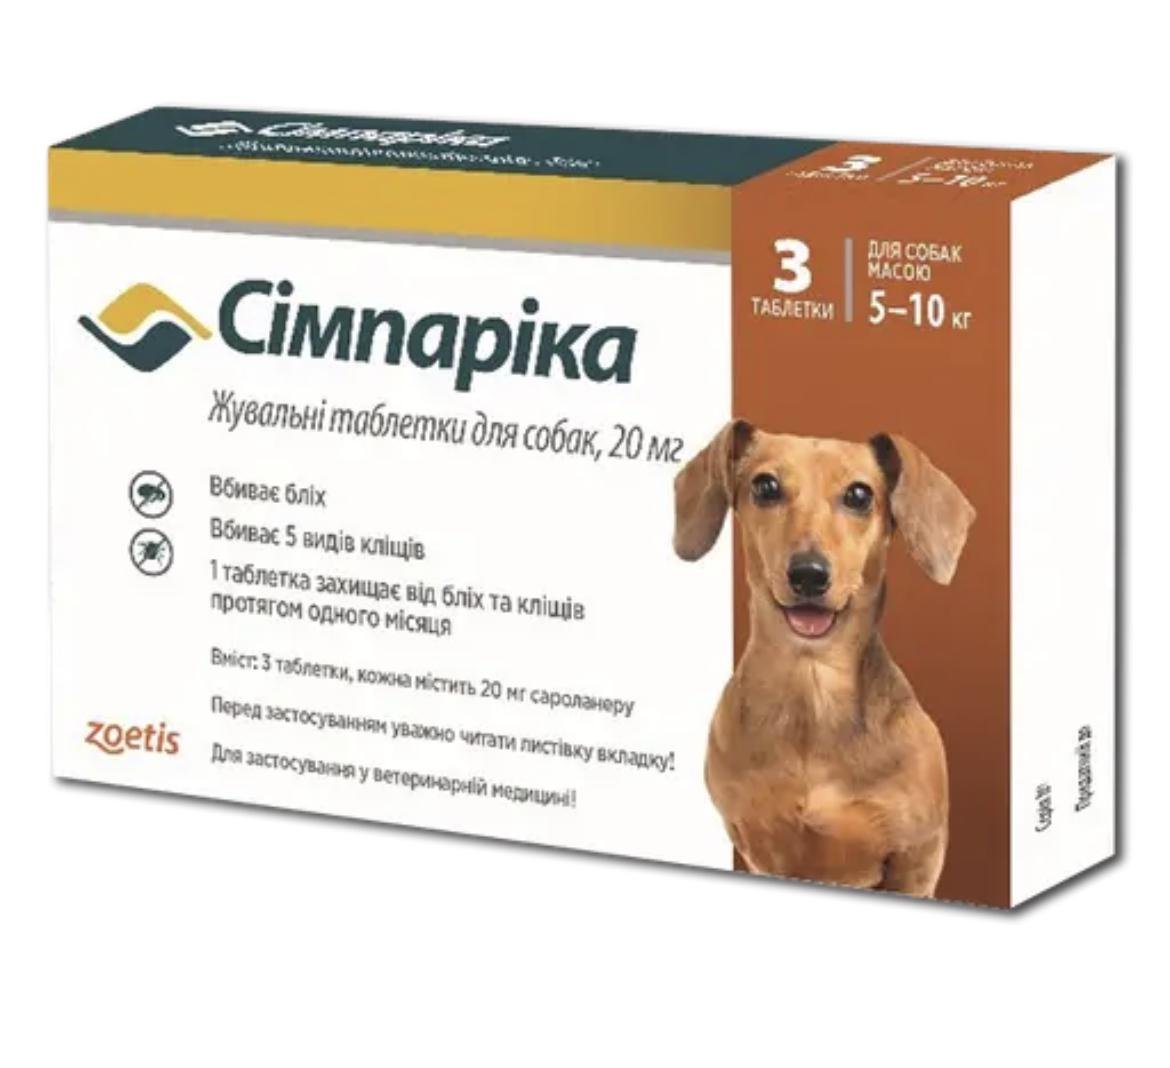 Таблетки жевательные Zoetis Симпарика против блох и клещей для собак весом от 5-10 кг 20 мг 3 шт.